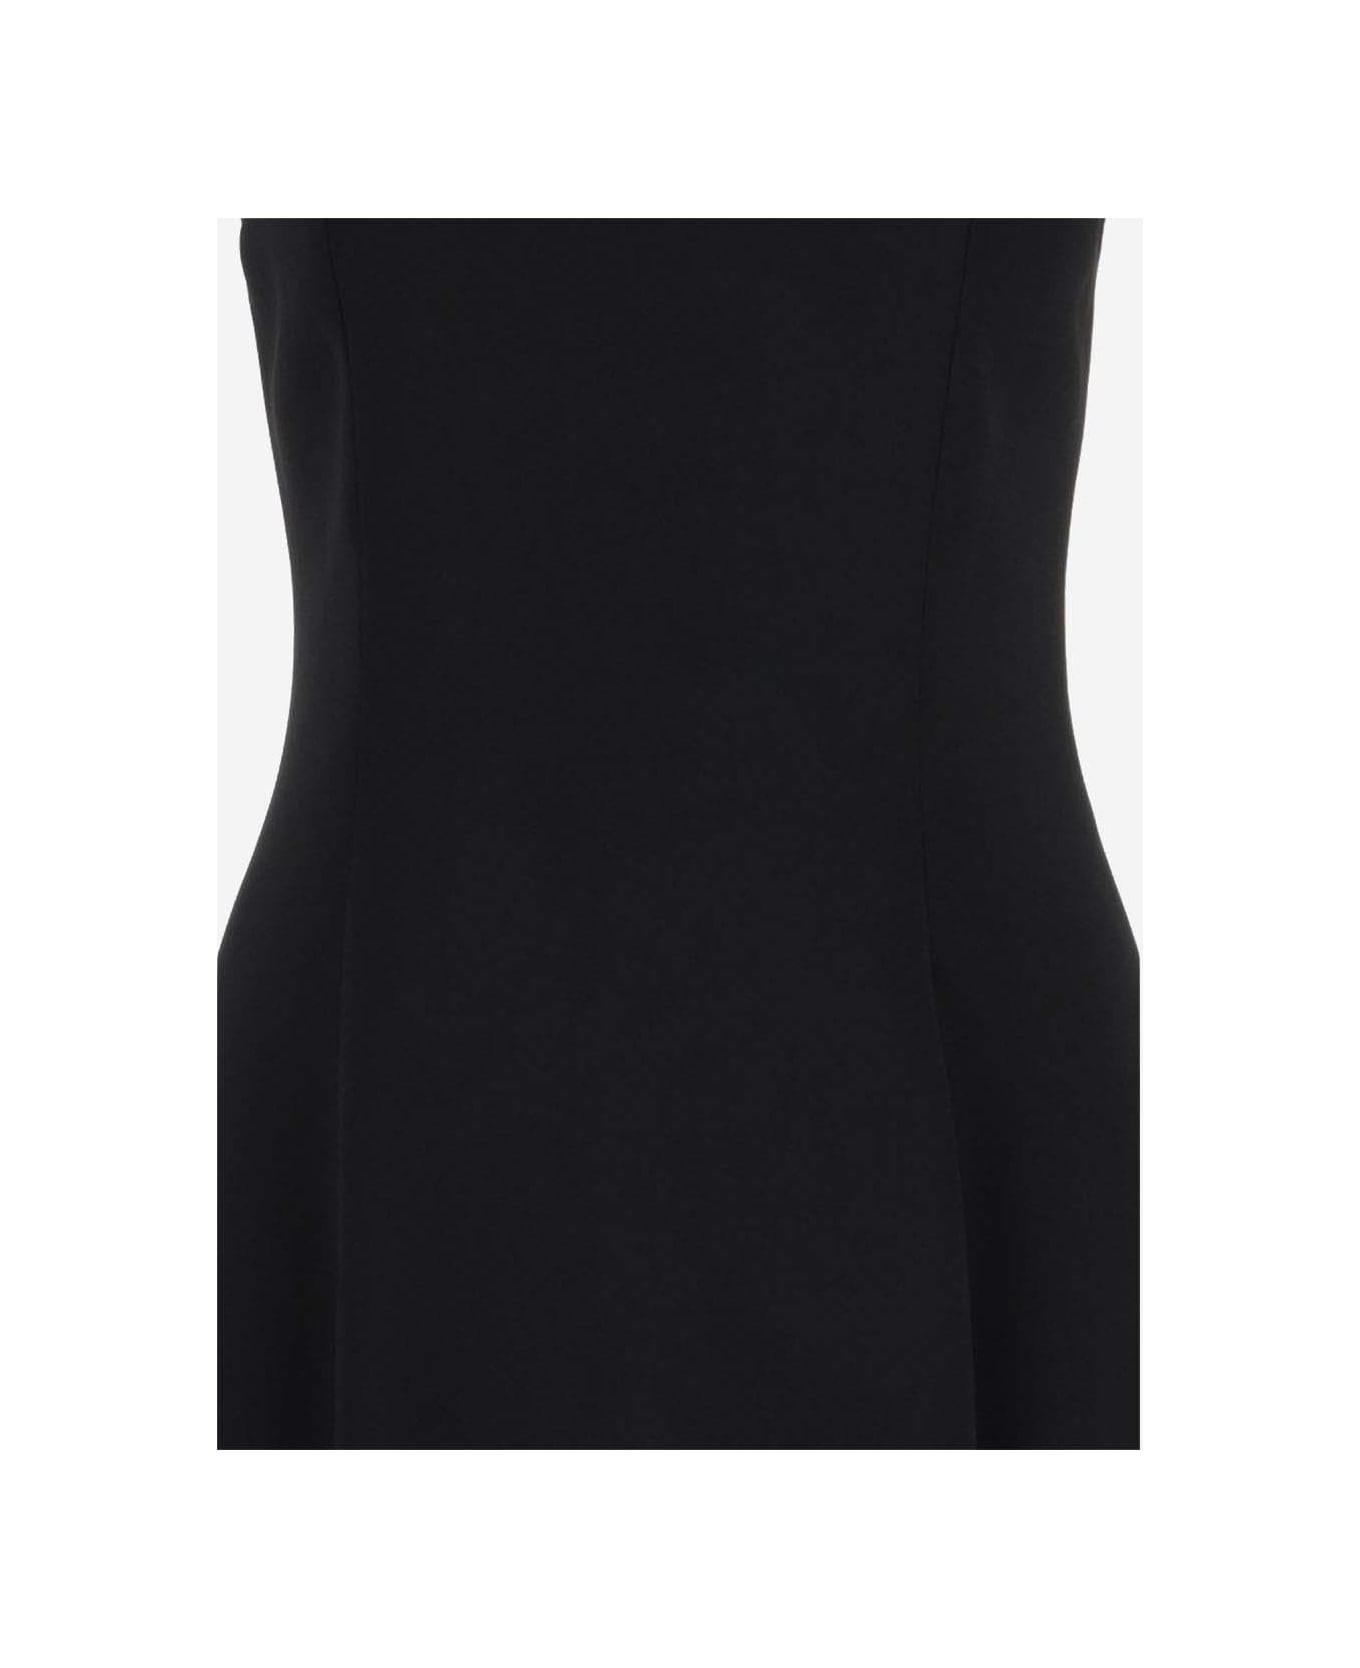 Giorgio Armani Strech Viscose Blend Longuette Dress - Black